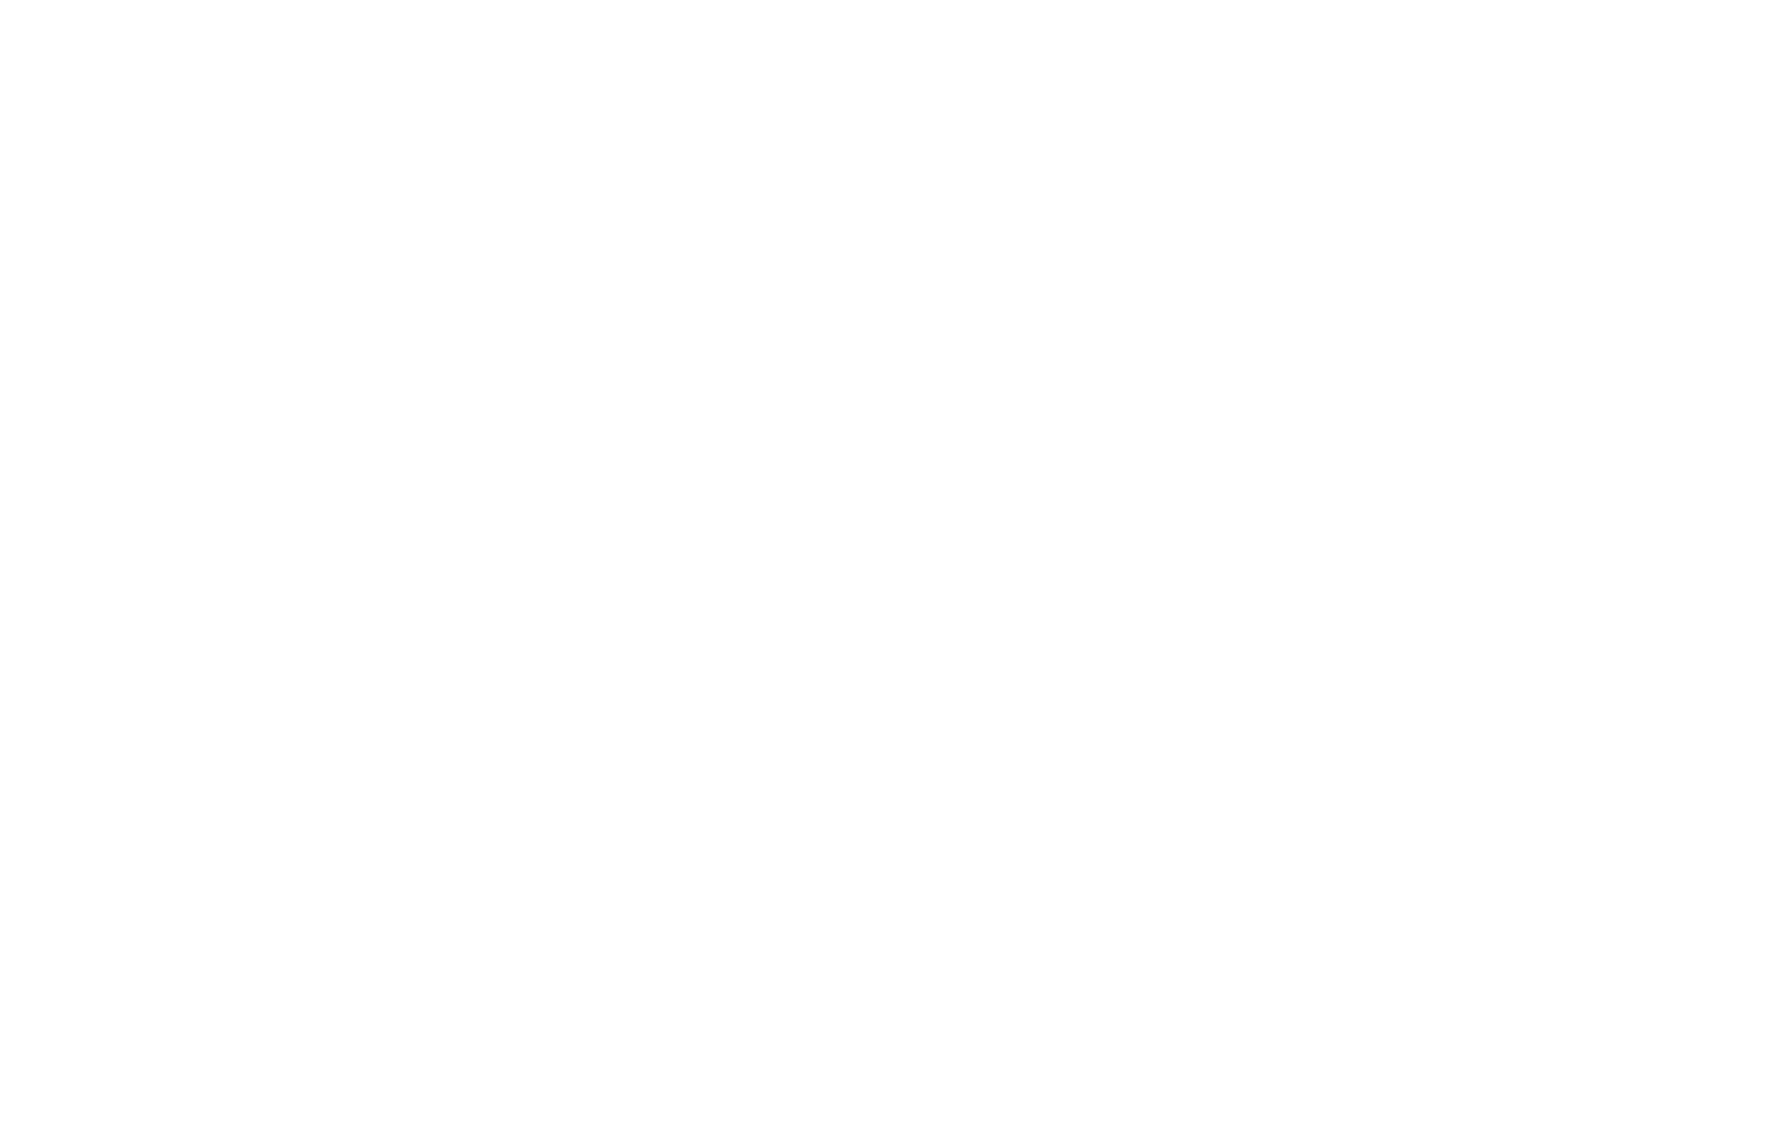 OnyxSkyview_logo_White